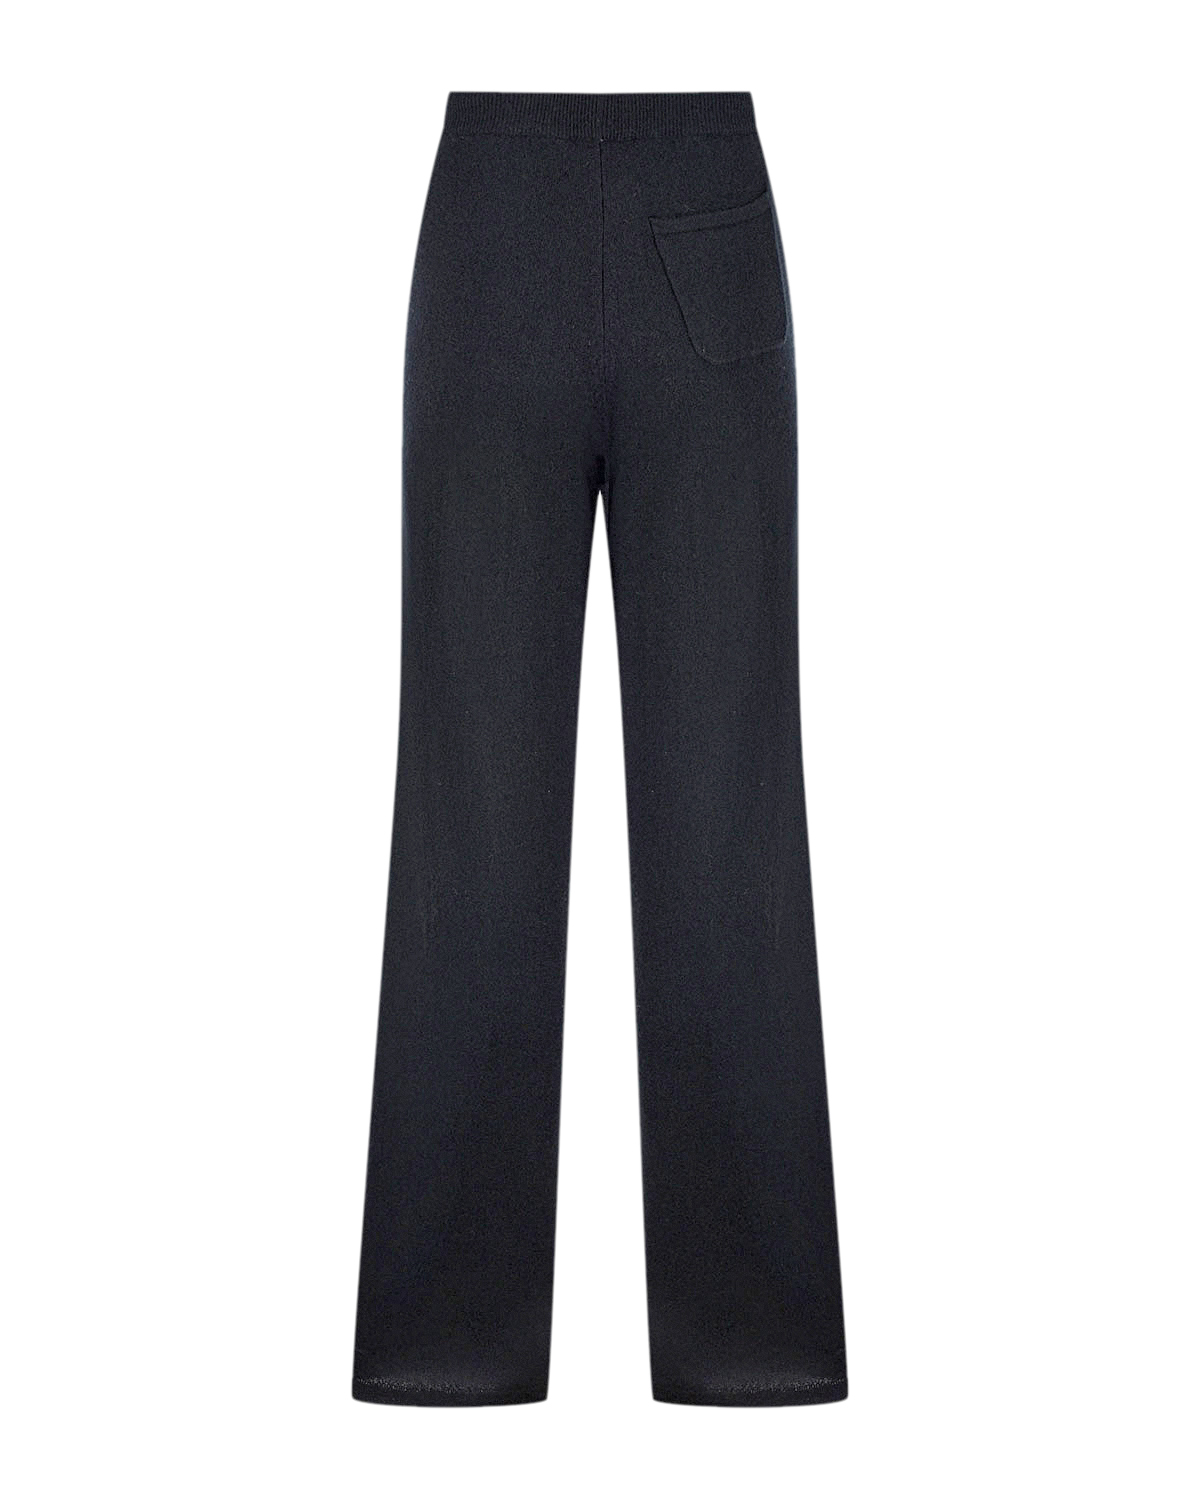 Черные брюки с поясом на кулиске Chinti&Parker, размер 38, цвет черный - фото 6